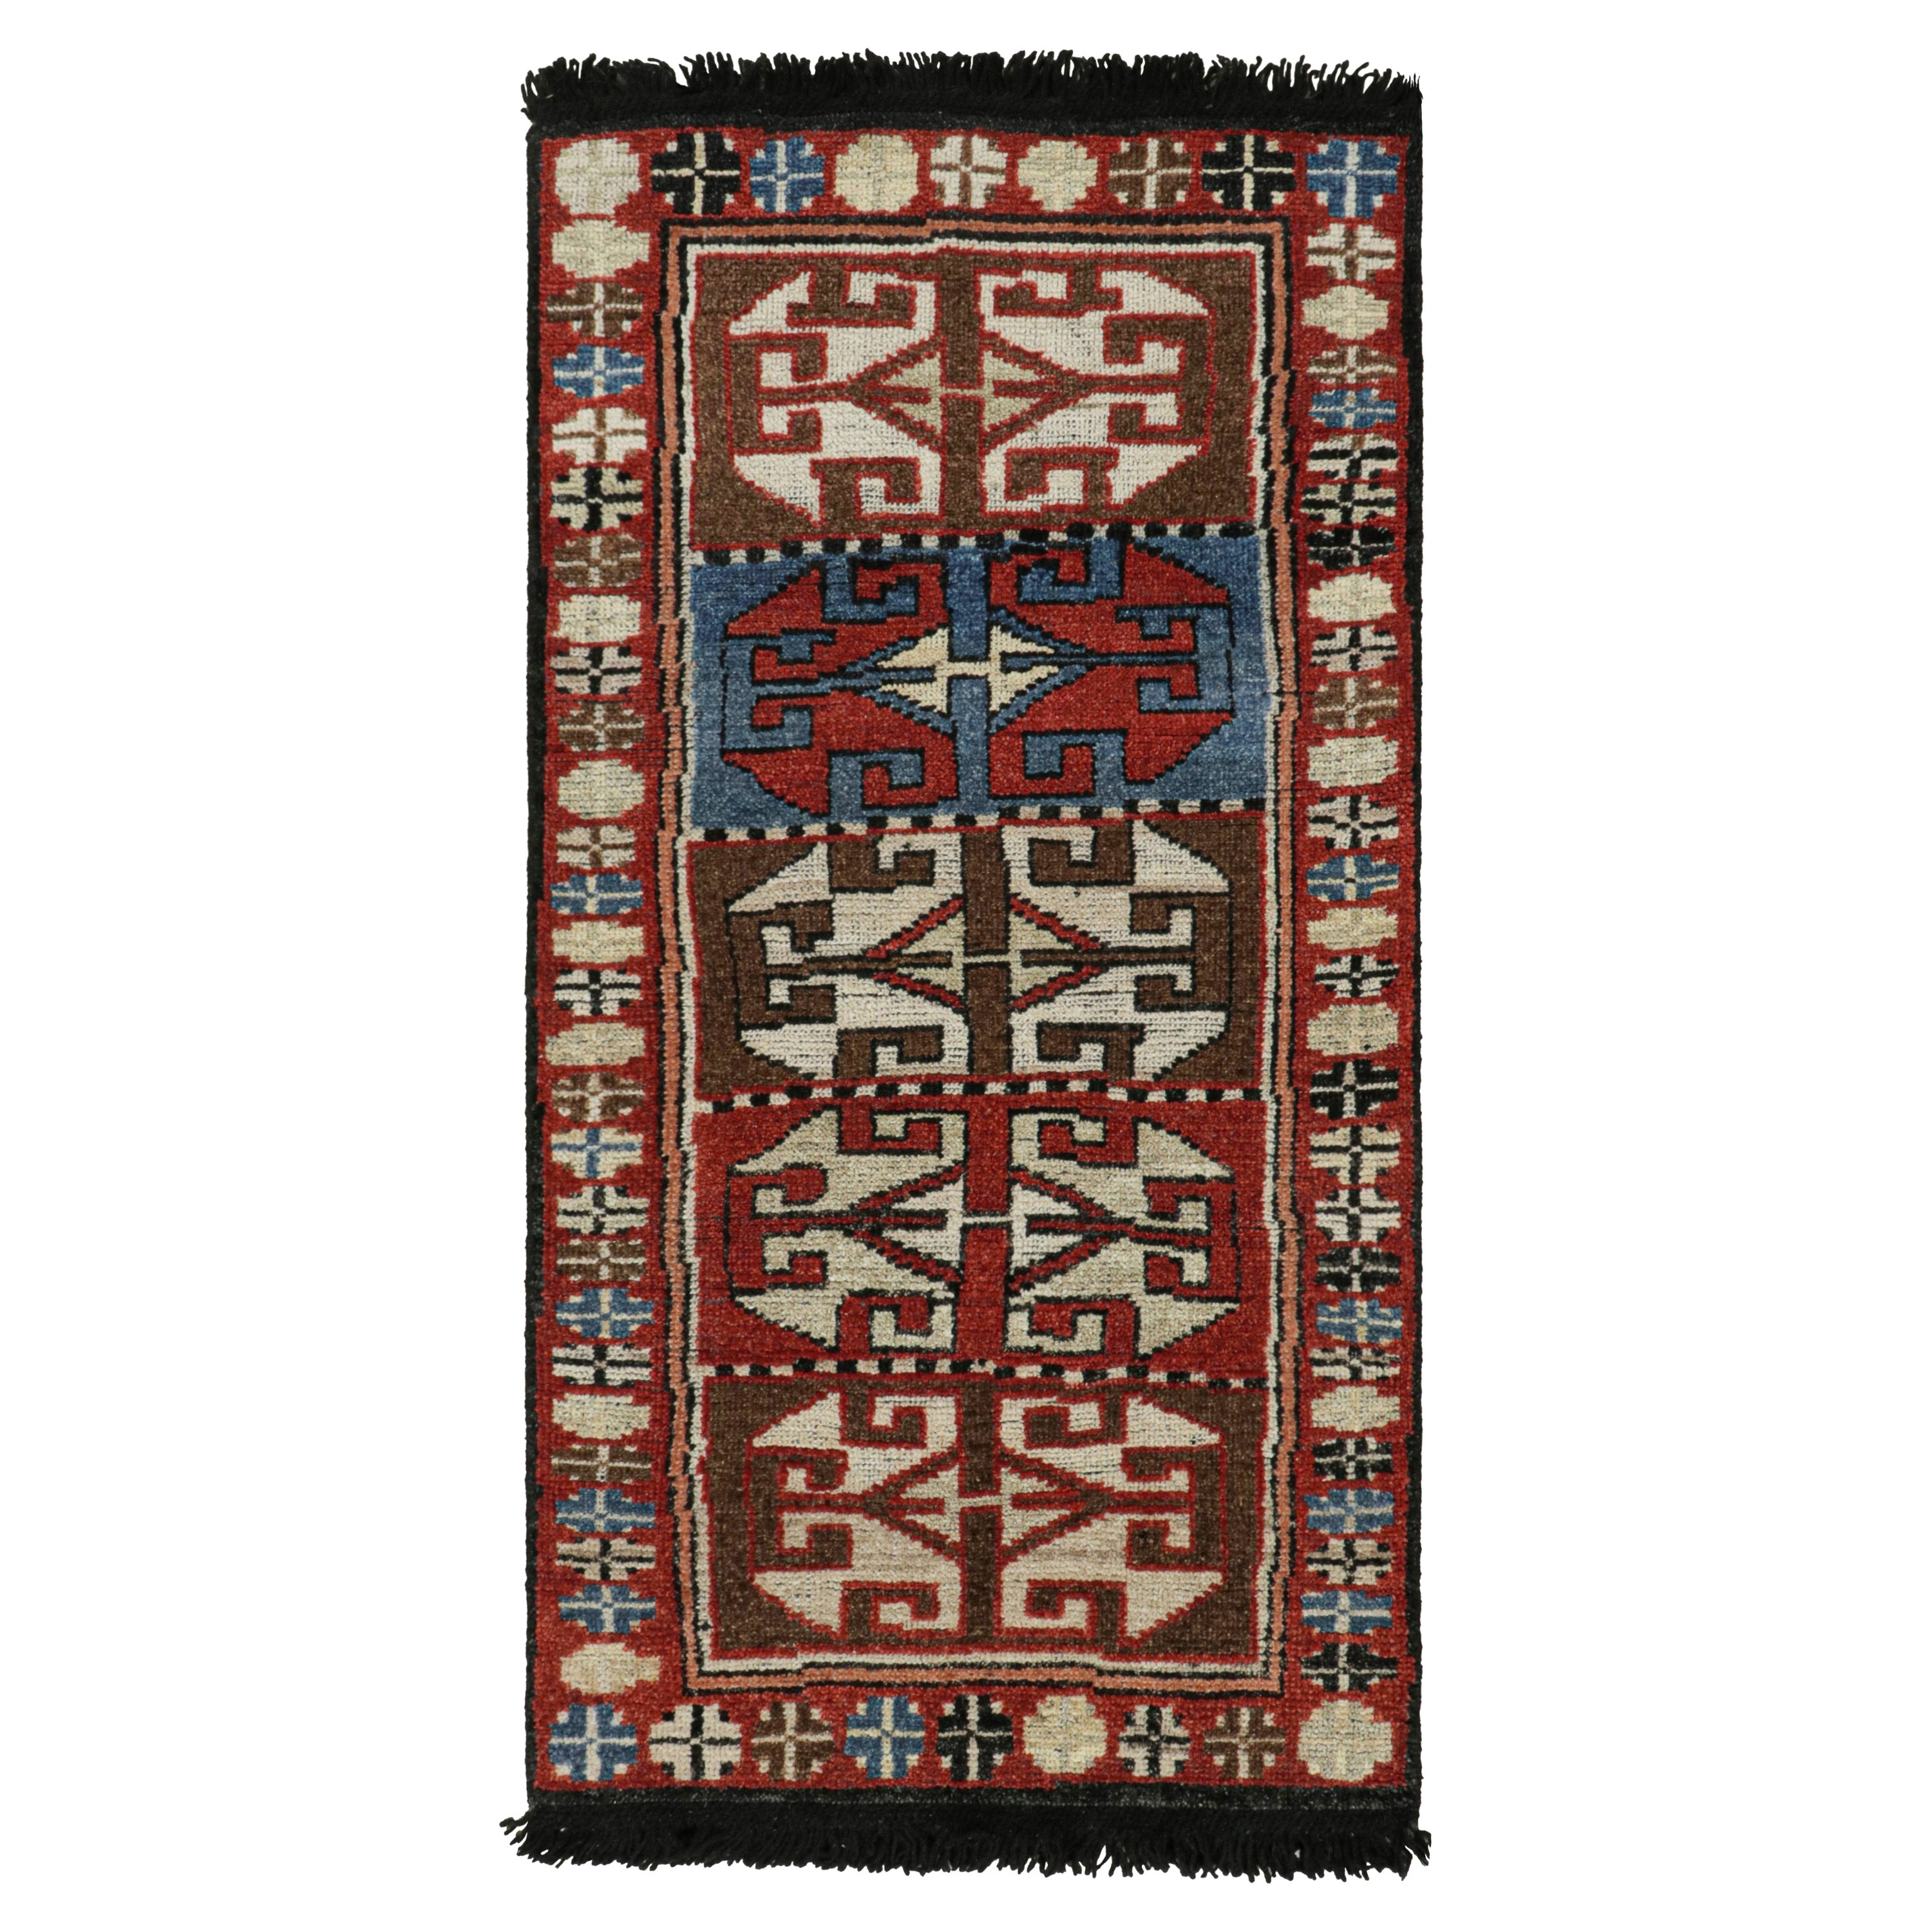 Rug & Kilim's Antique Tribal Style Rug in Red, Blue & Brown Patterns (tapis ancien de style tribal à motifs rouges, bleus et bruns)